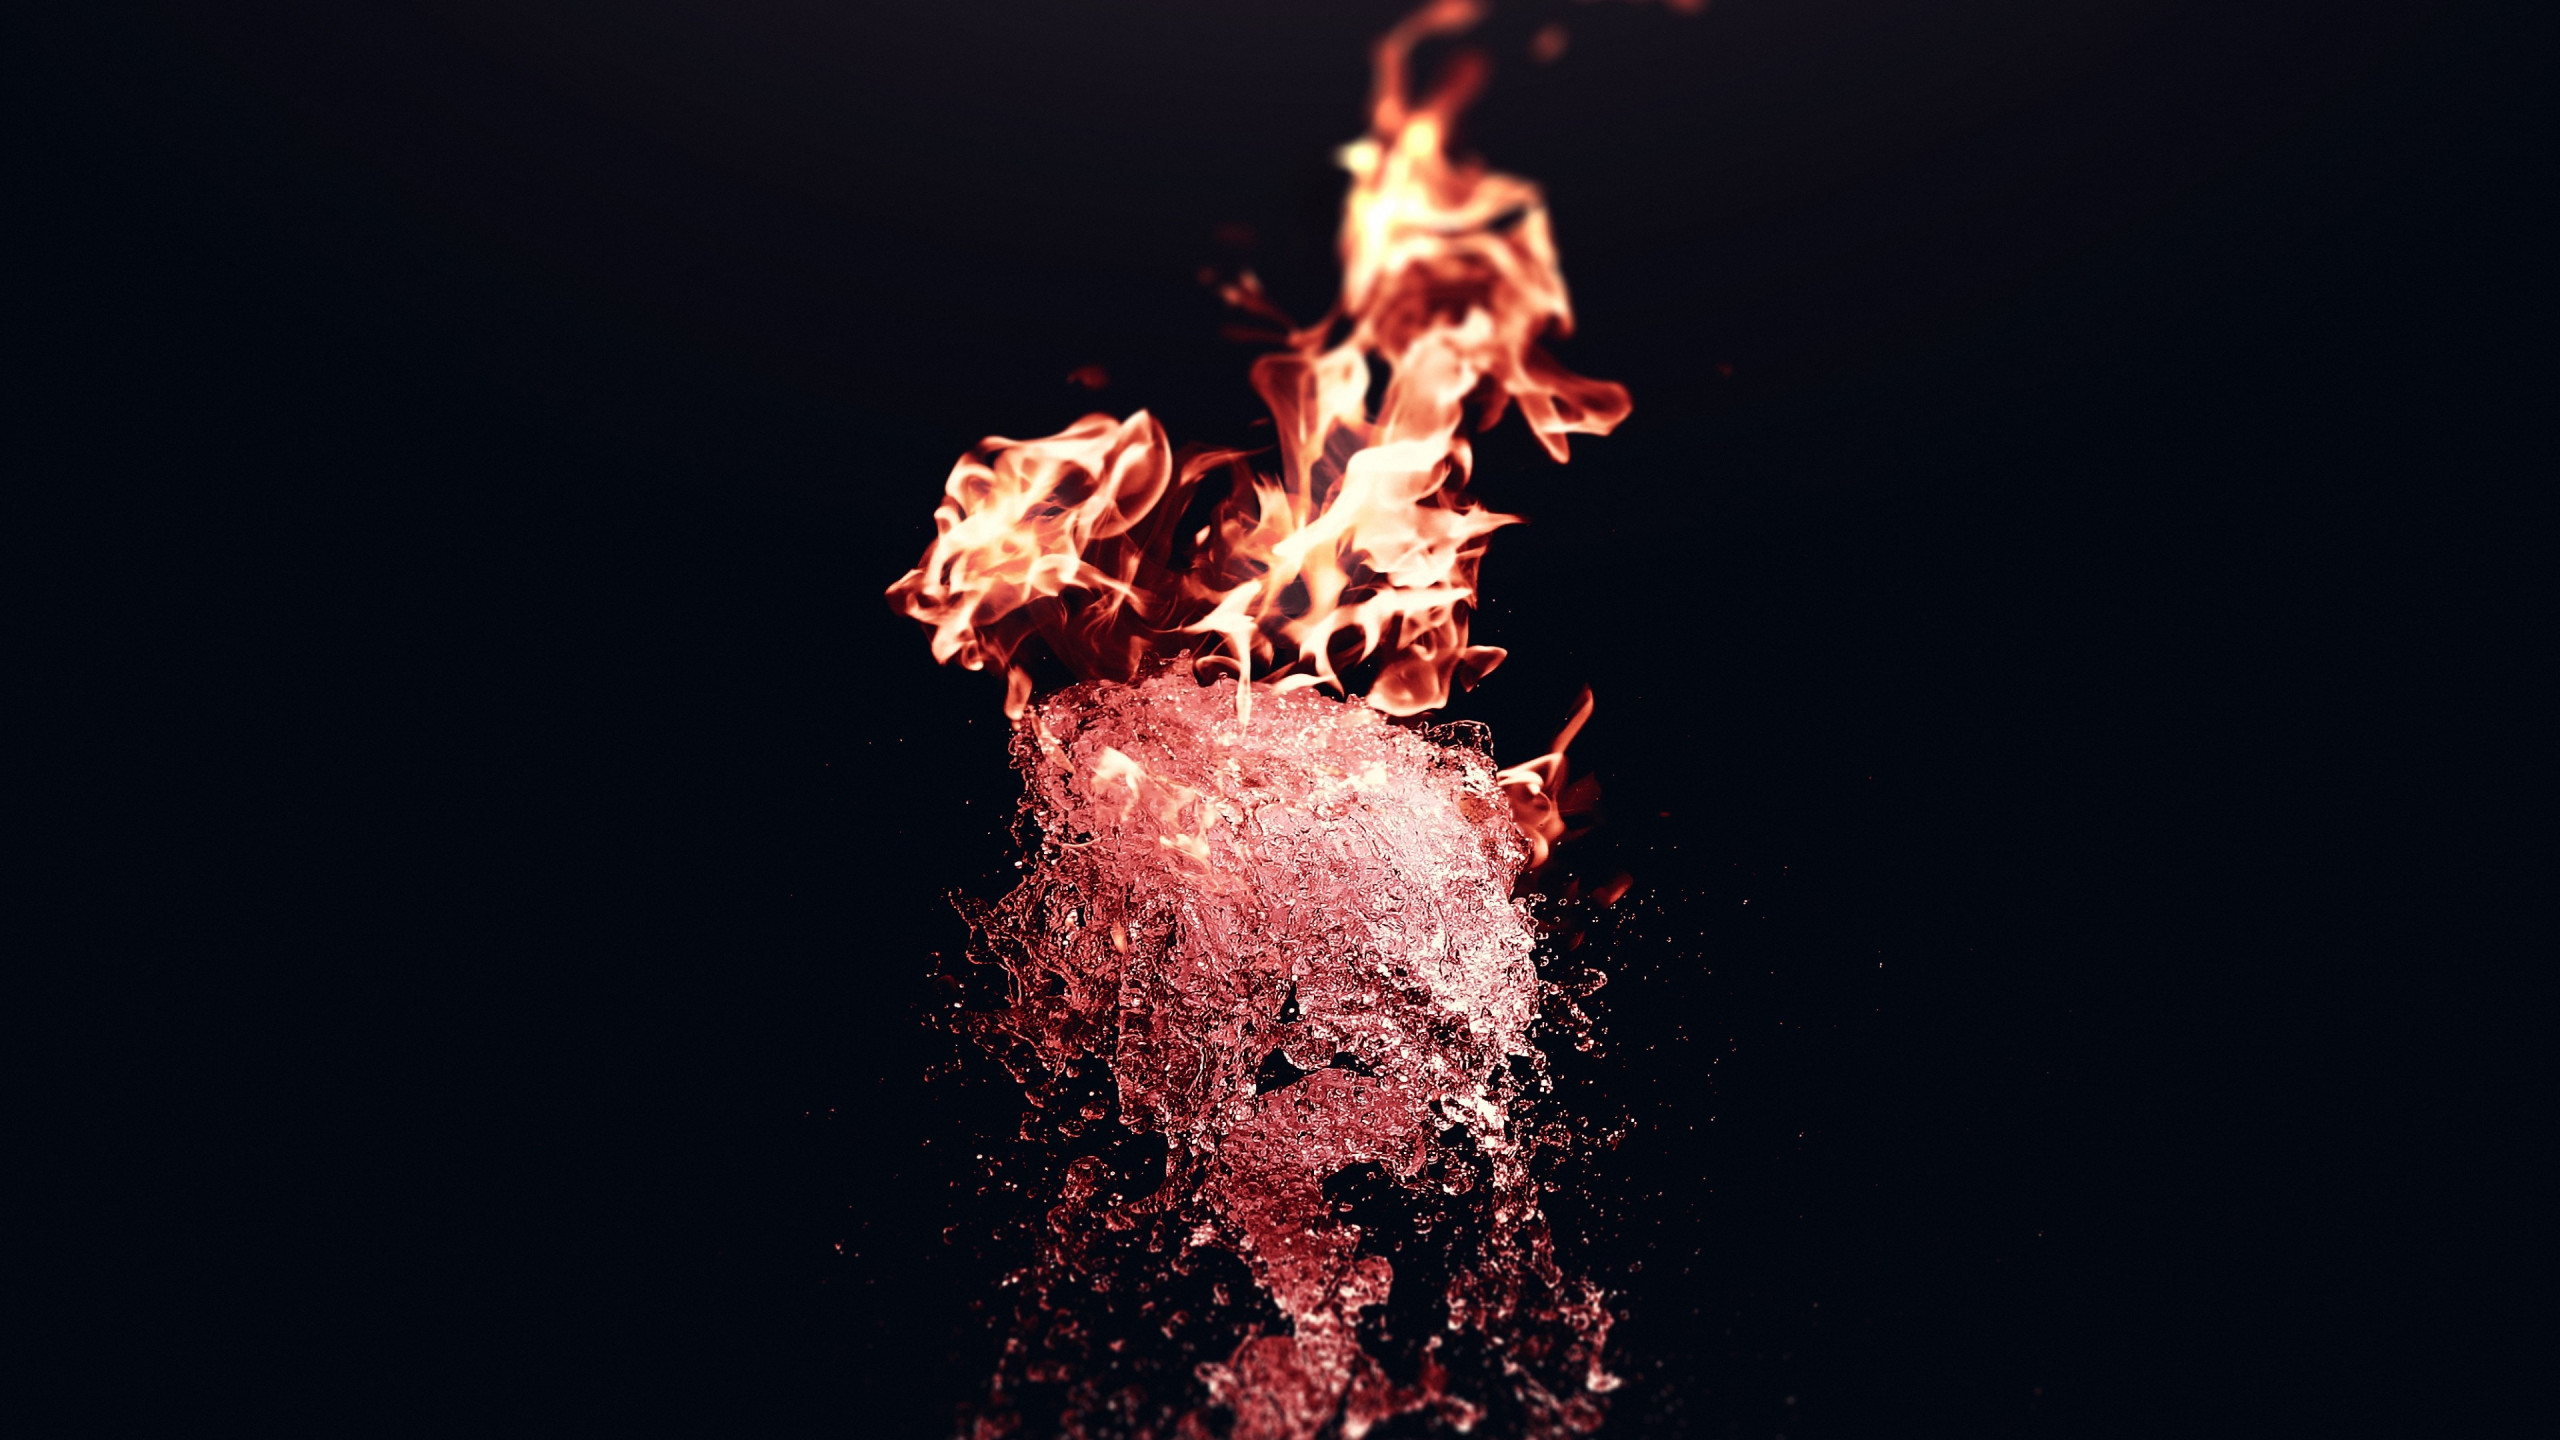 Fire vs Water wallpaper 2560x1440